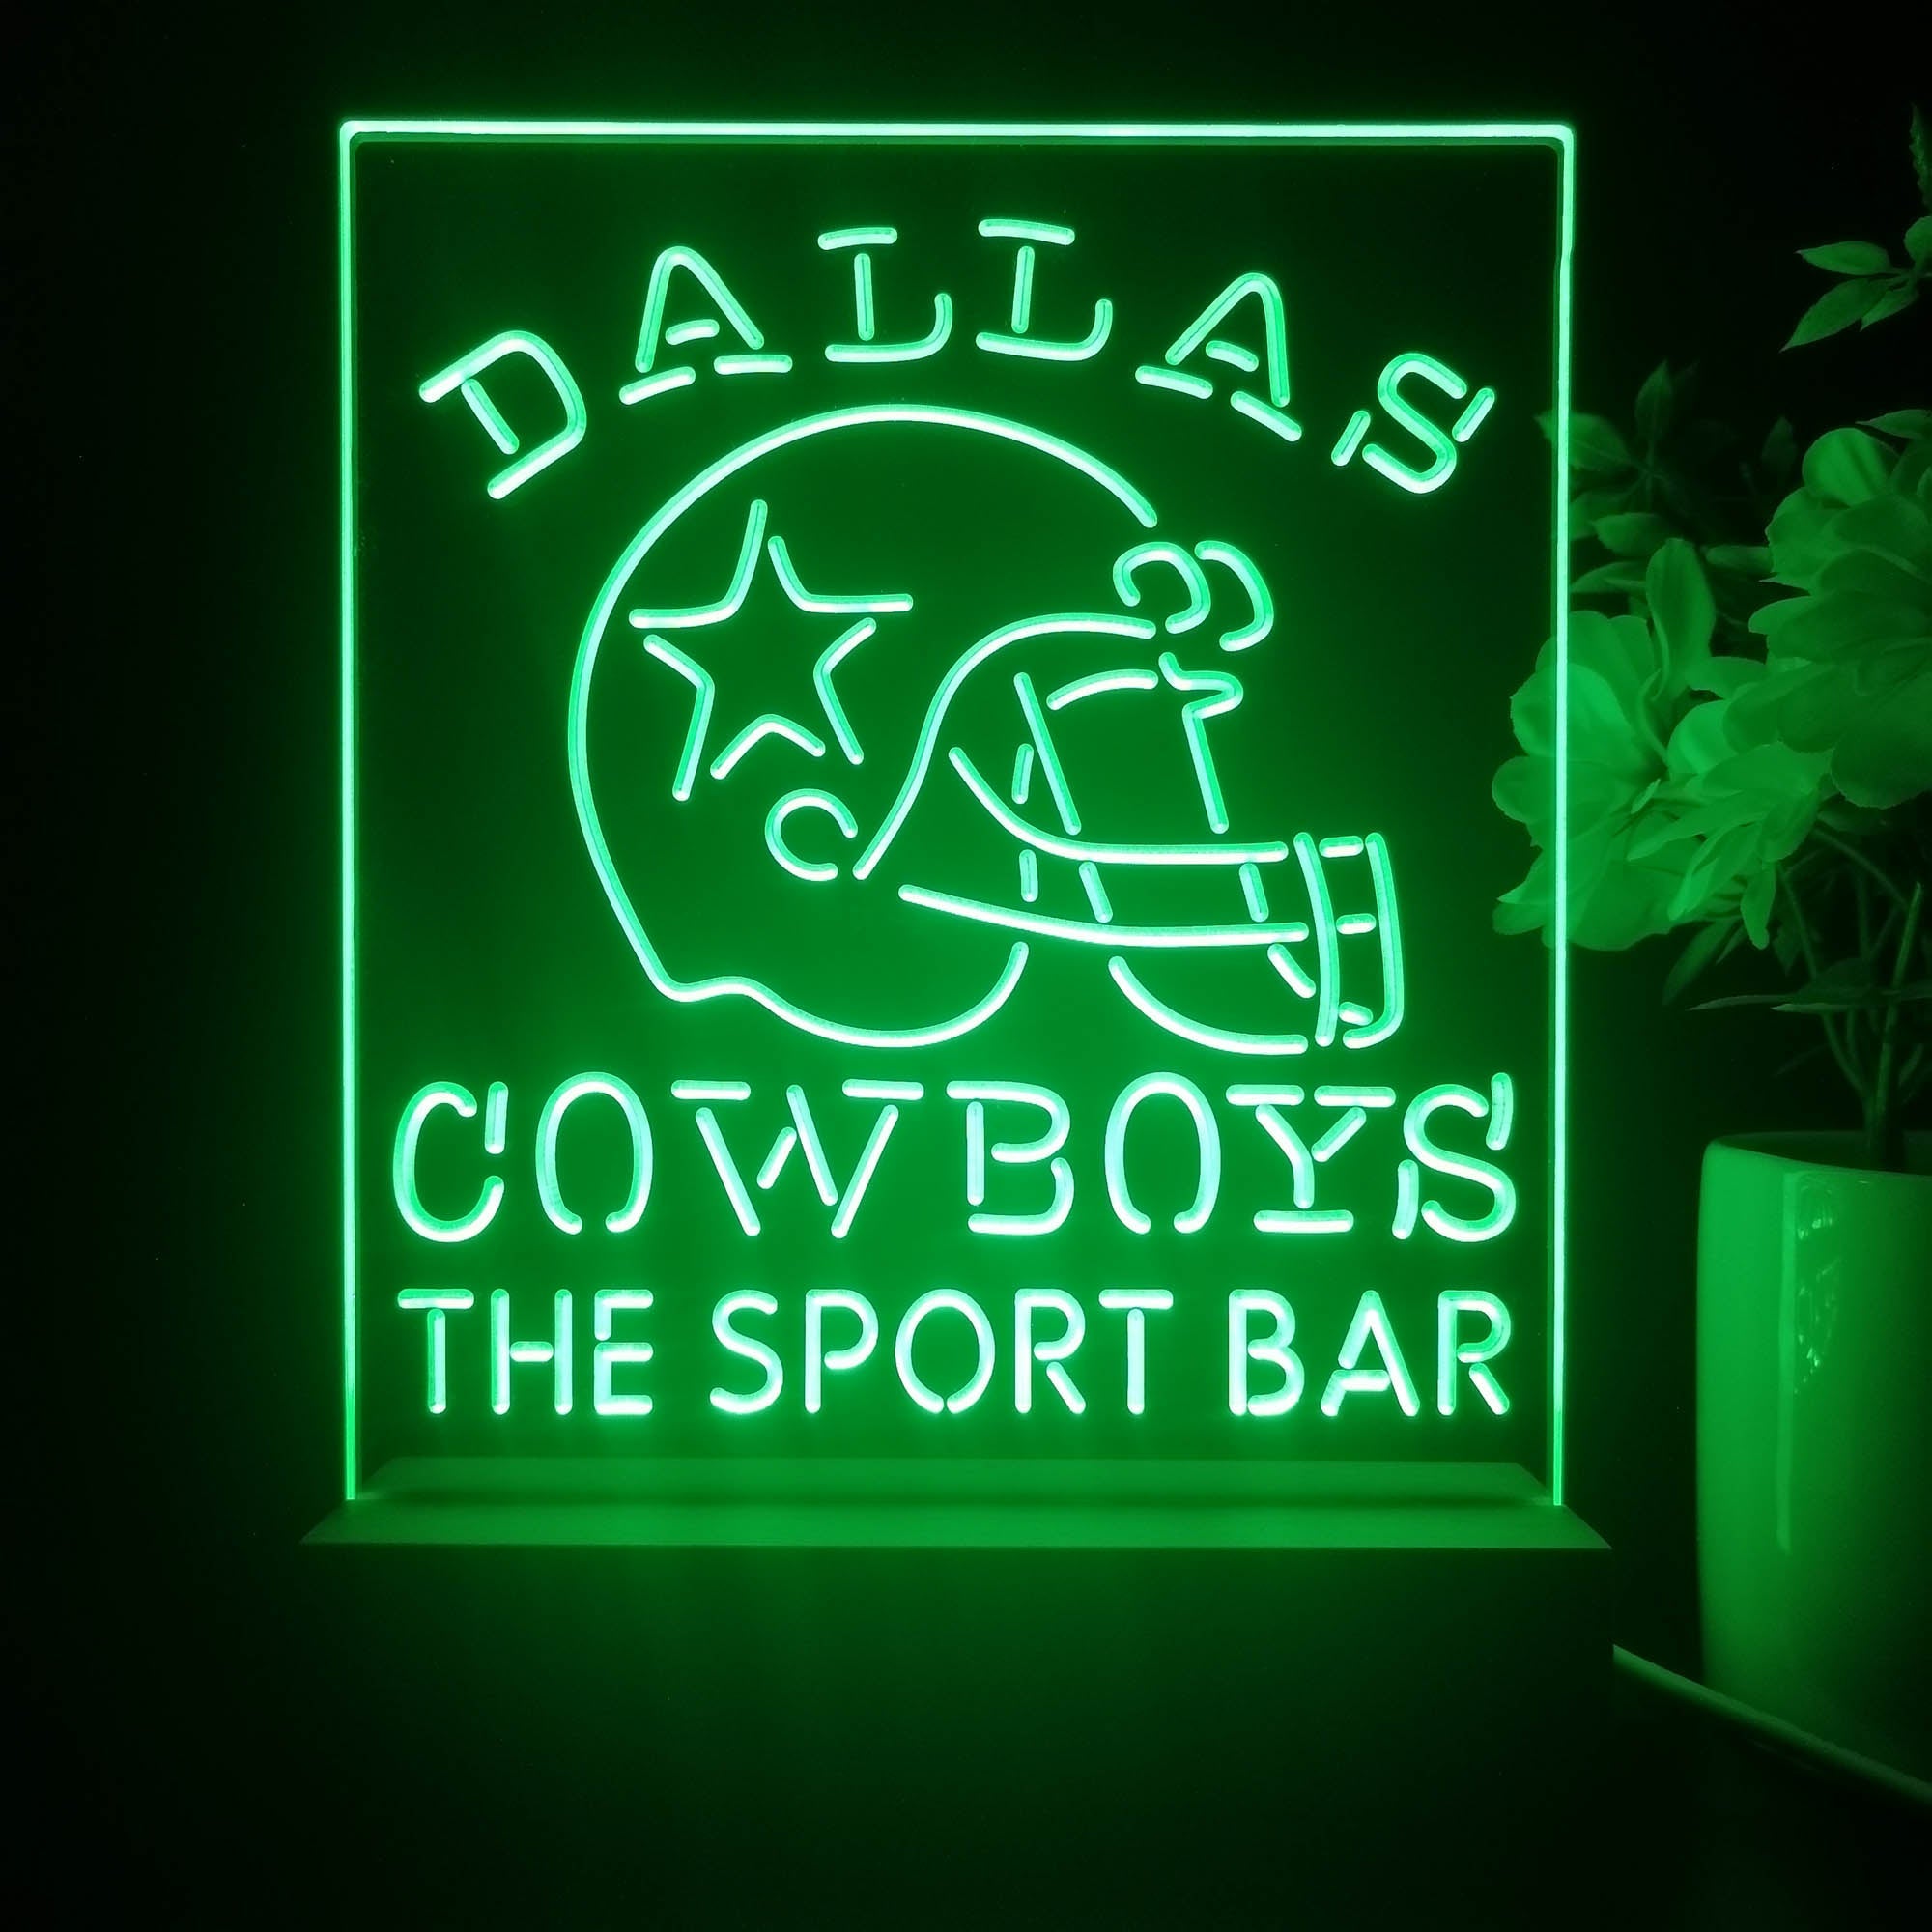 Personalized Dallas Cowboys Souvenir Neon LED Sign Lamp